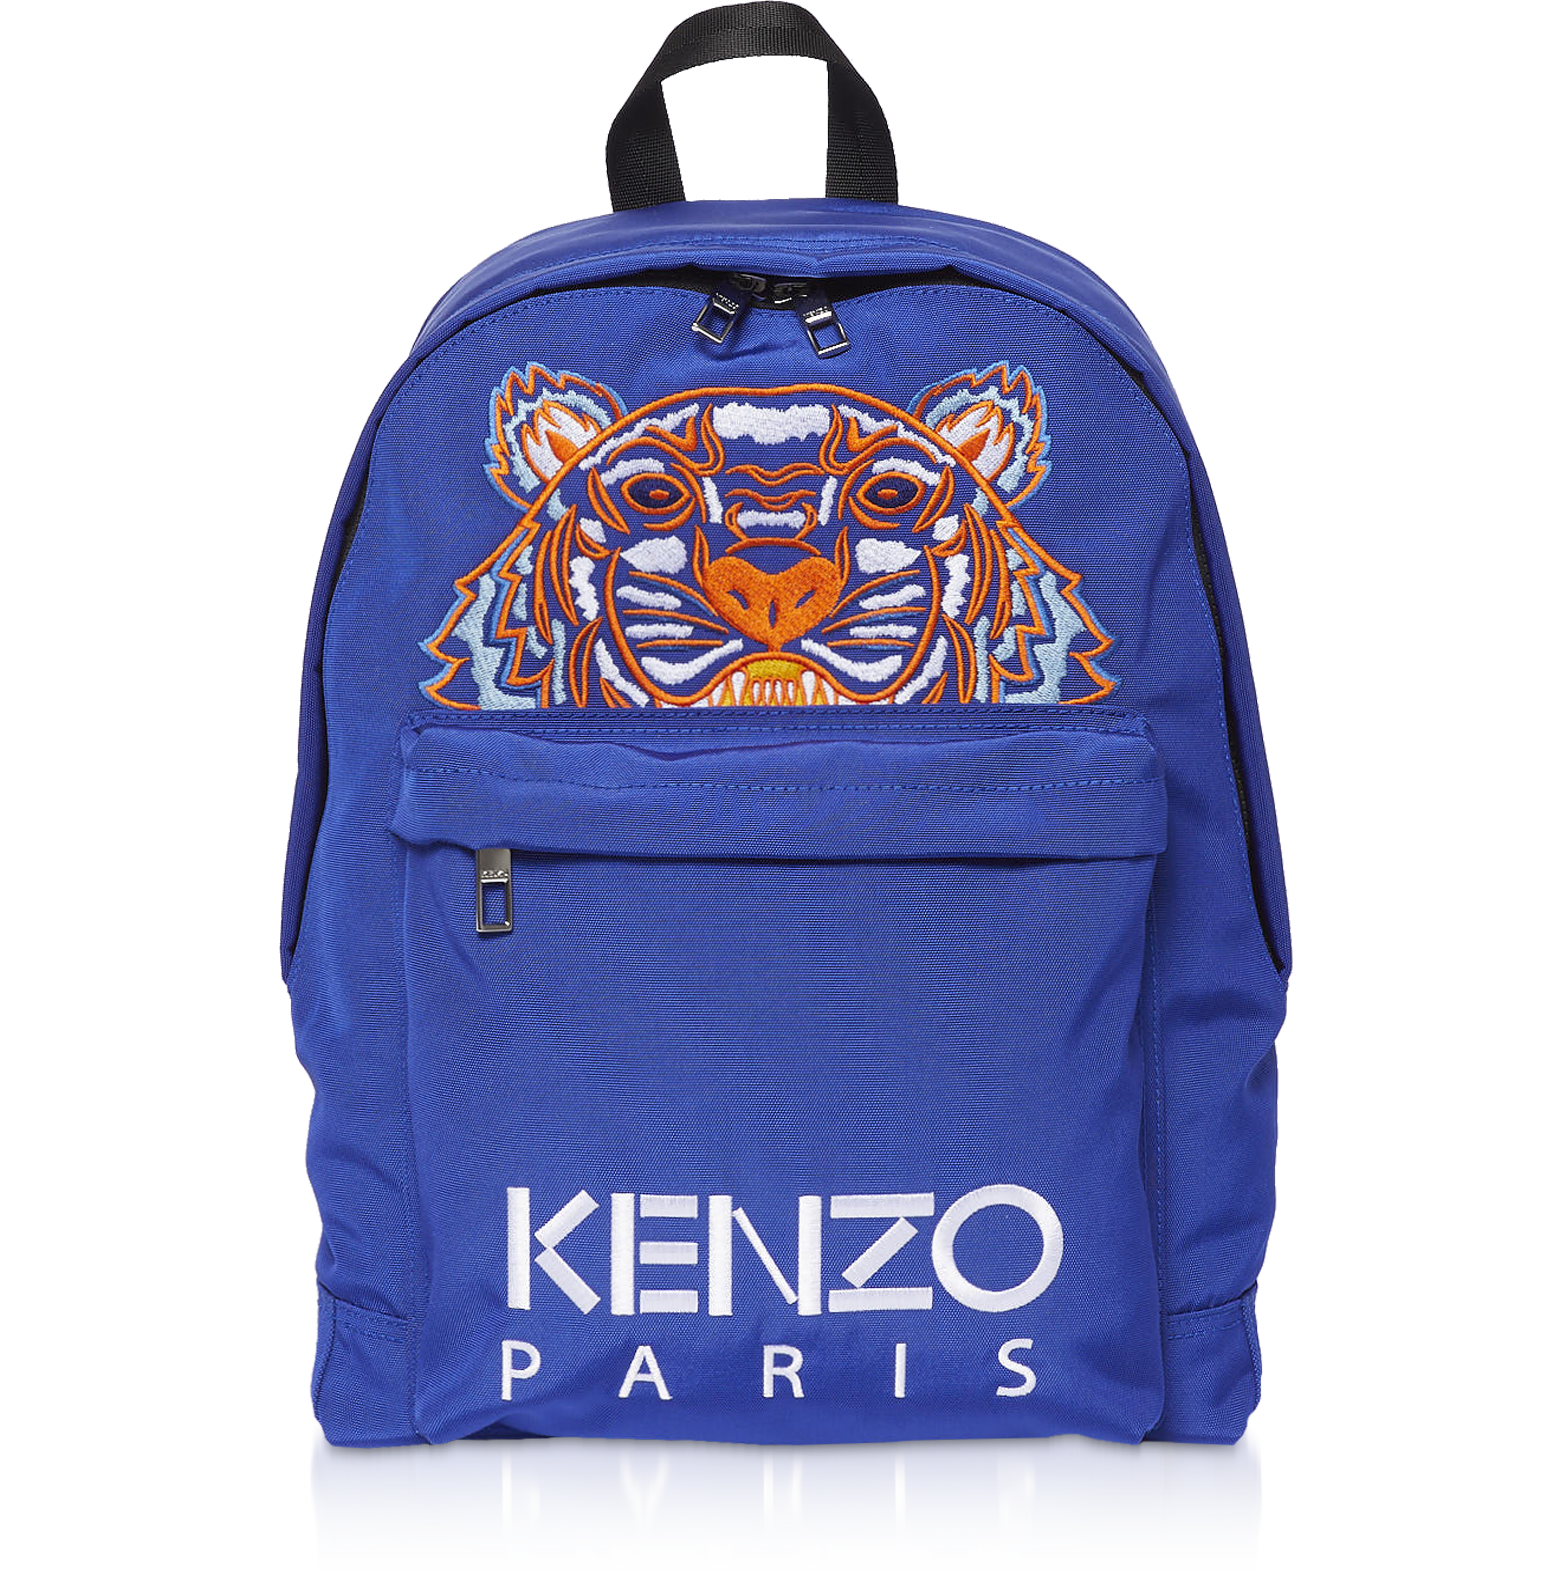 kenzo blue backpack